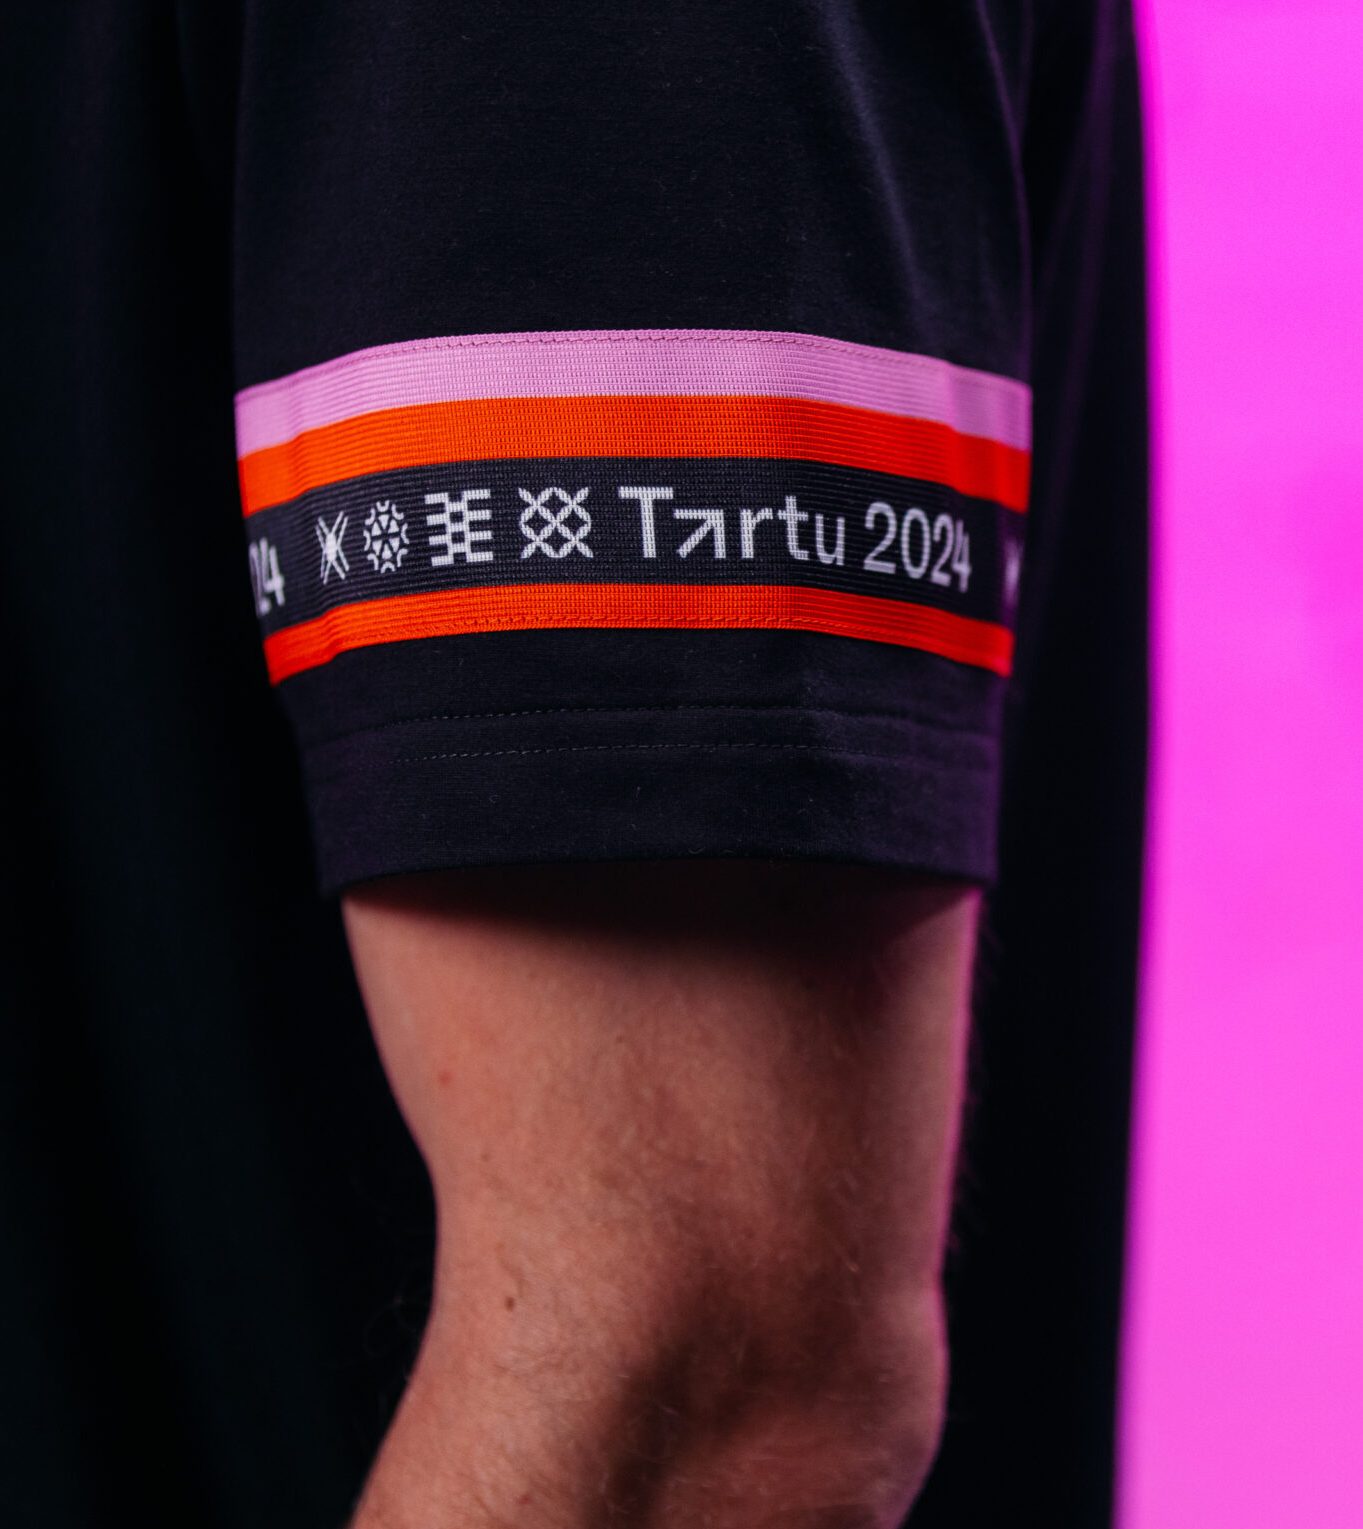 iLLIMOR x Tartu 2024 pink t-shirt